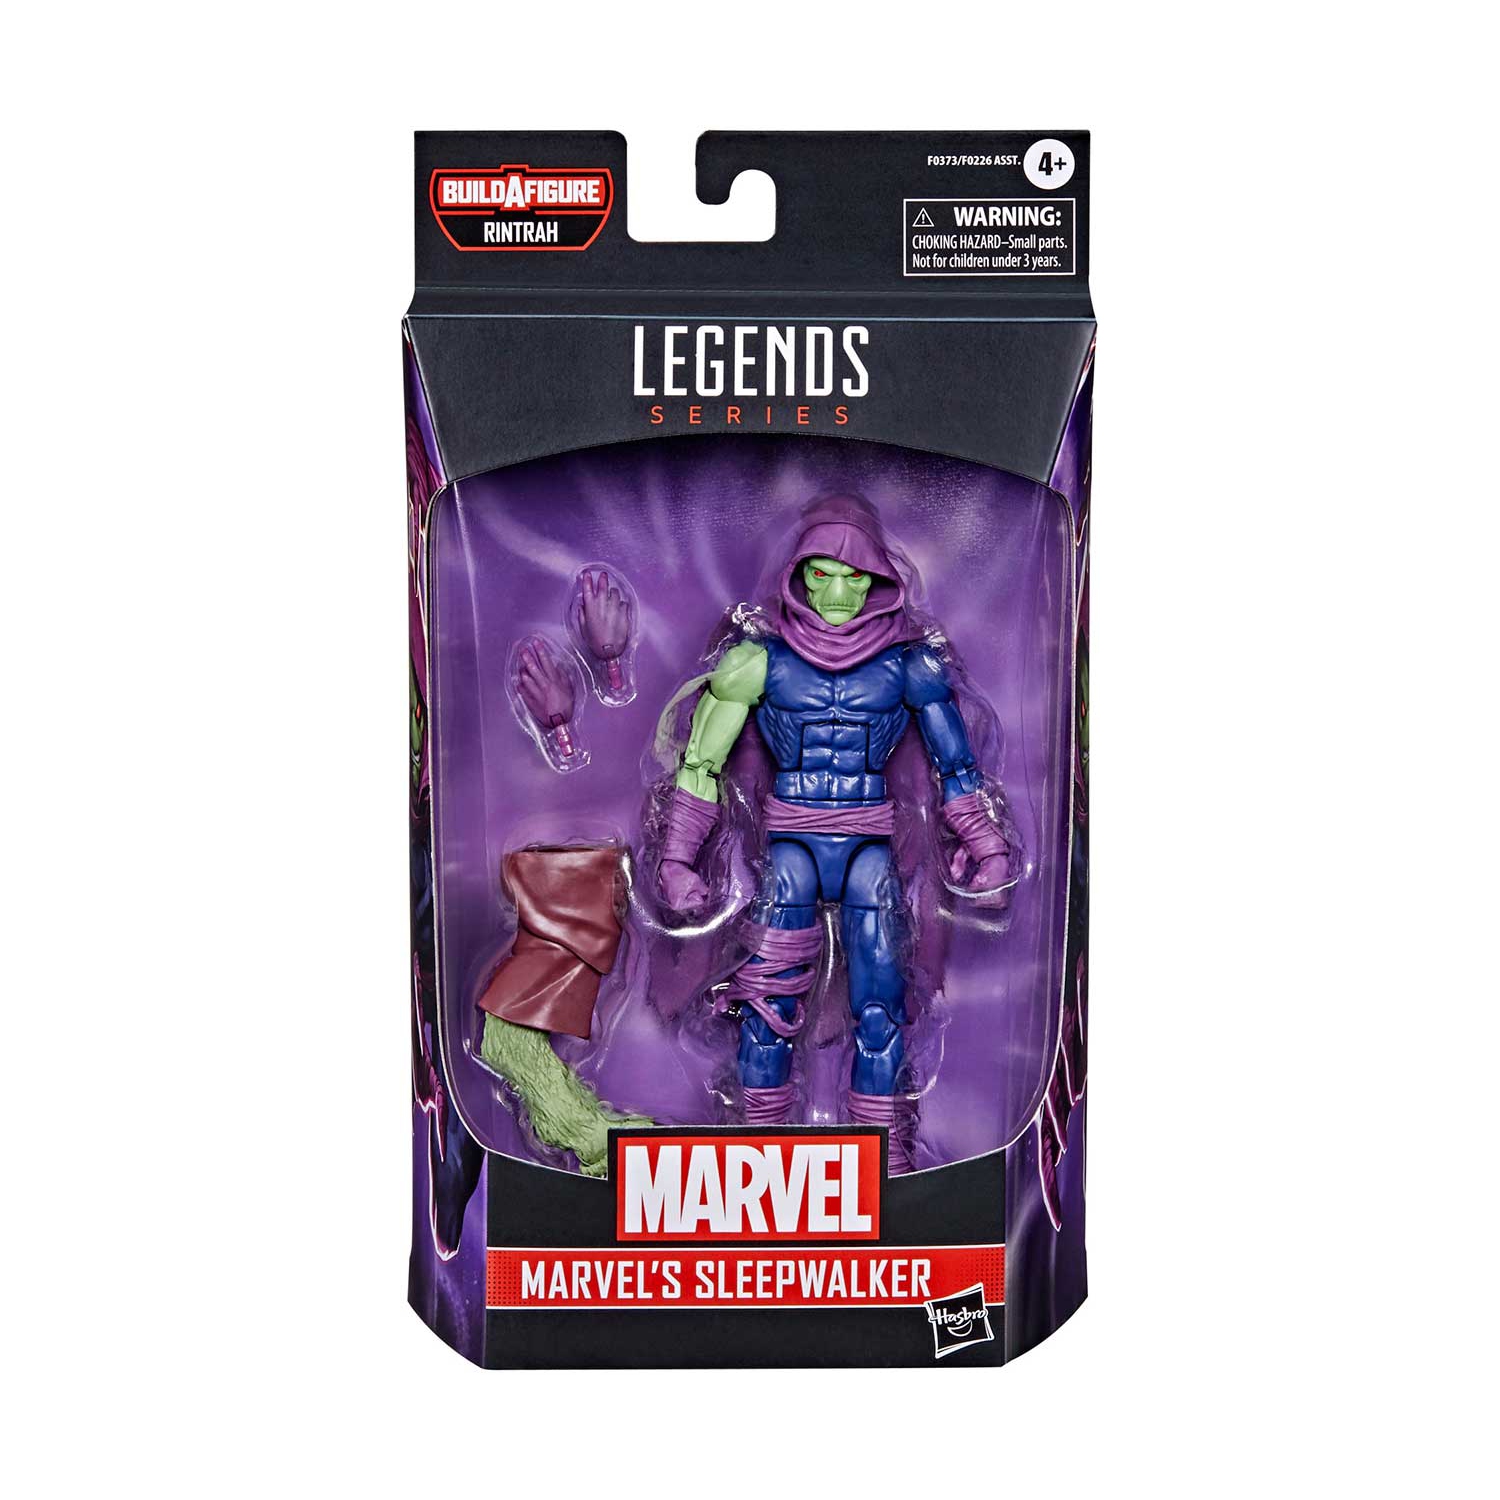 Marvel Legends Doctor Strange 6 Inch Action Figure BAF Rintrah - Sleepwalker